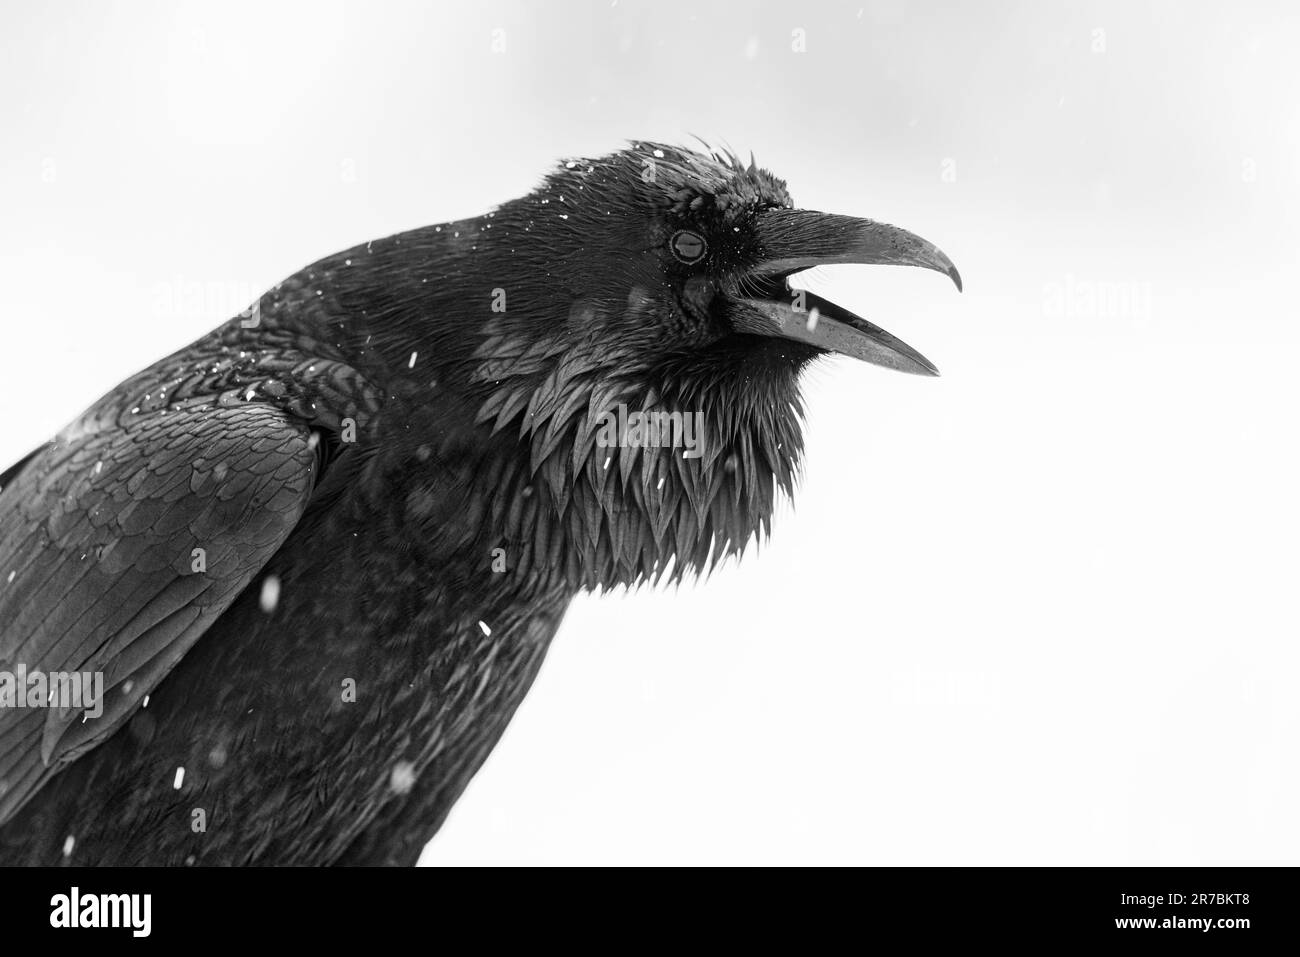 Un cuervo negro de pie en un paisaje invernal, mirando a un lado con su pico ligeramente abierto Foto de stock